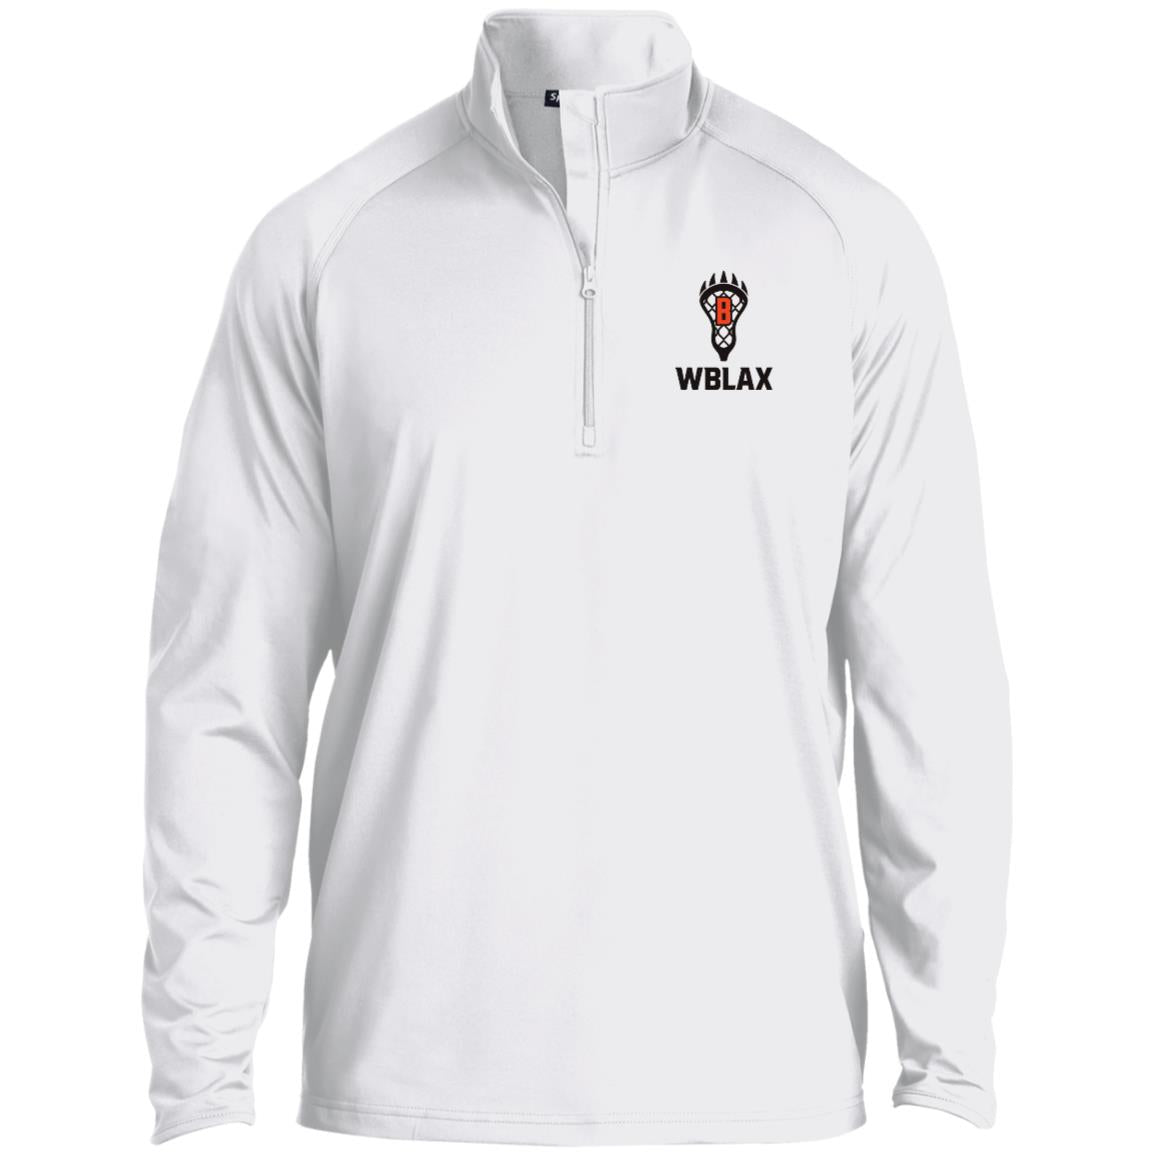 WBLAX Men's 1/2 Zip Performance Pullover